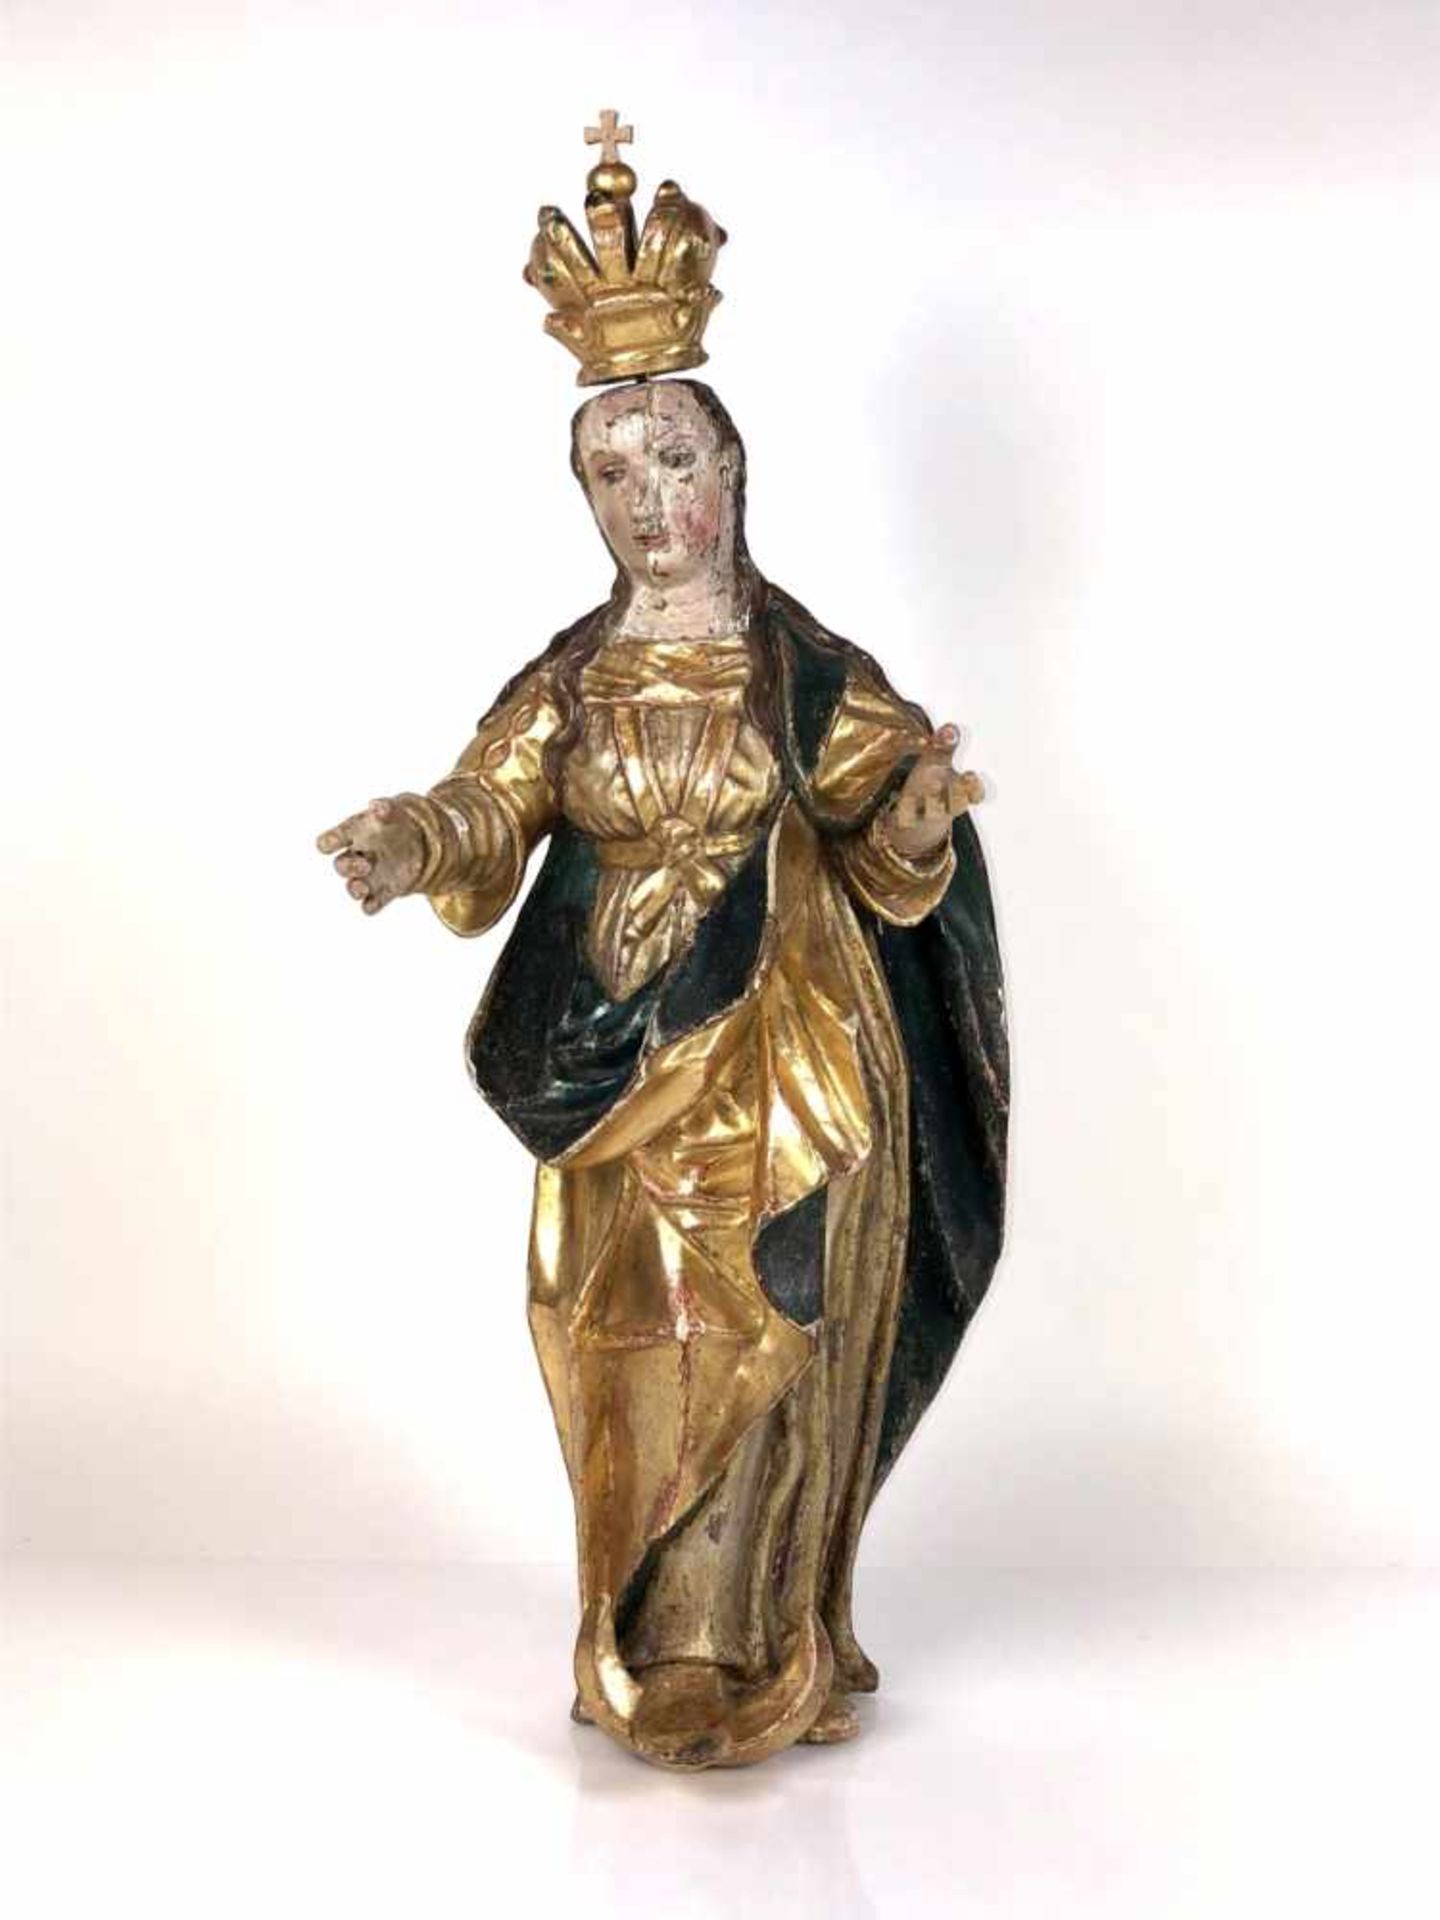 Madonna (18.Jh.) auf Mondsichel stehend; bekrönt; Holz vollrund geschnitzt; farbig gefasst und